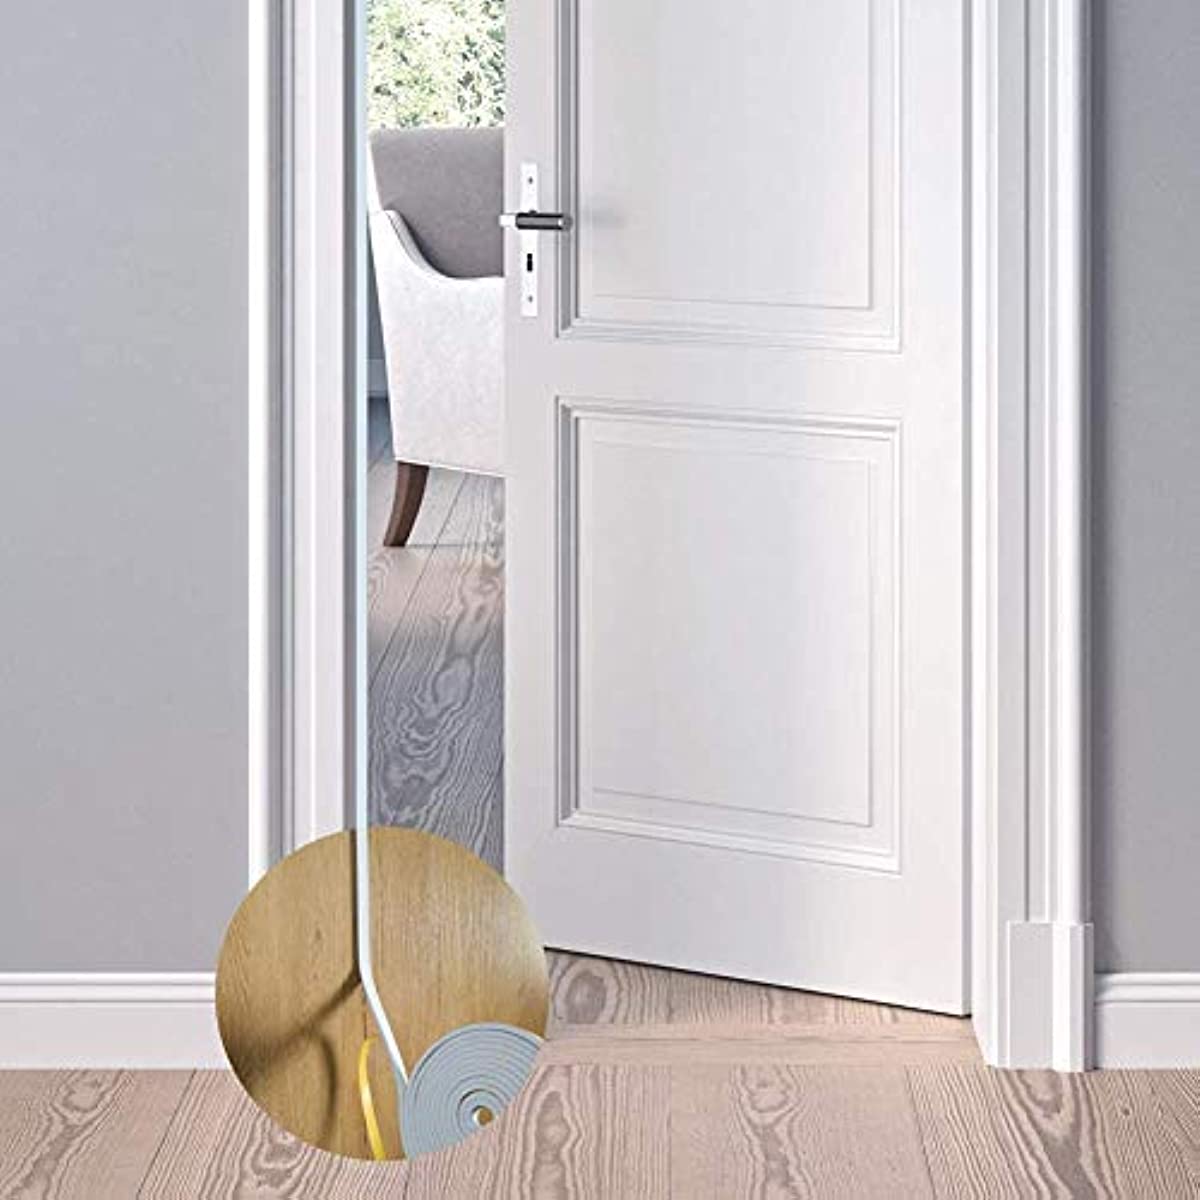 fowong Weather Stripping Door Seal Brown, V Shape Door Seal Strip, 1/2 in Wide x 19 ft Long Foam Seal Strip for Door Frame, Draftproof Door